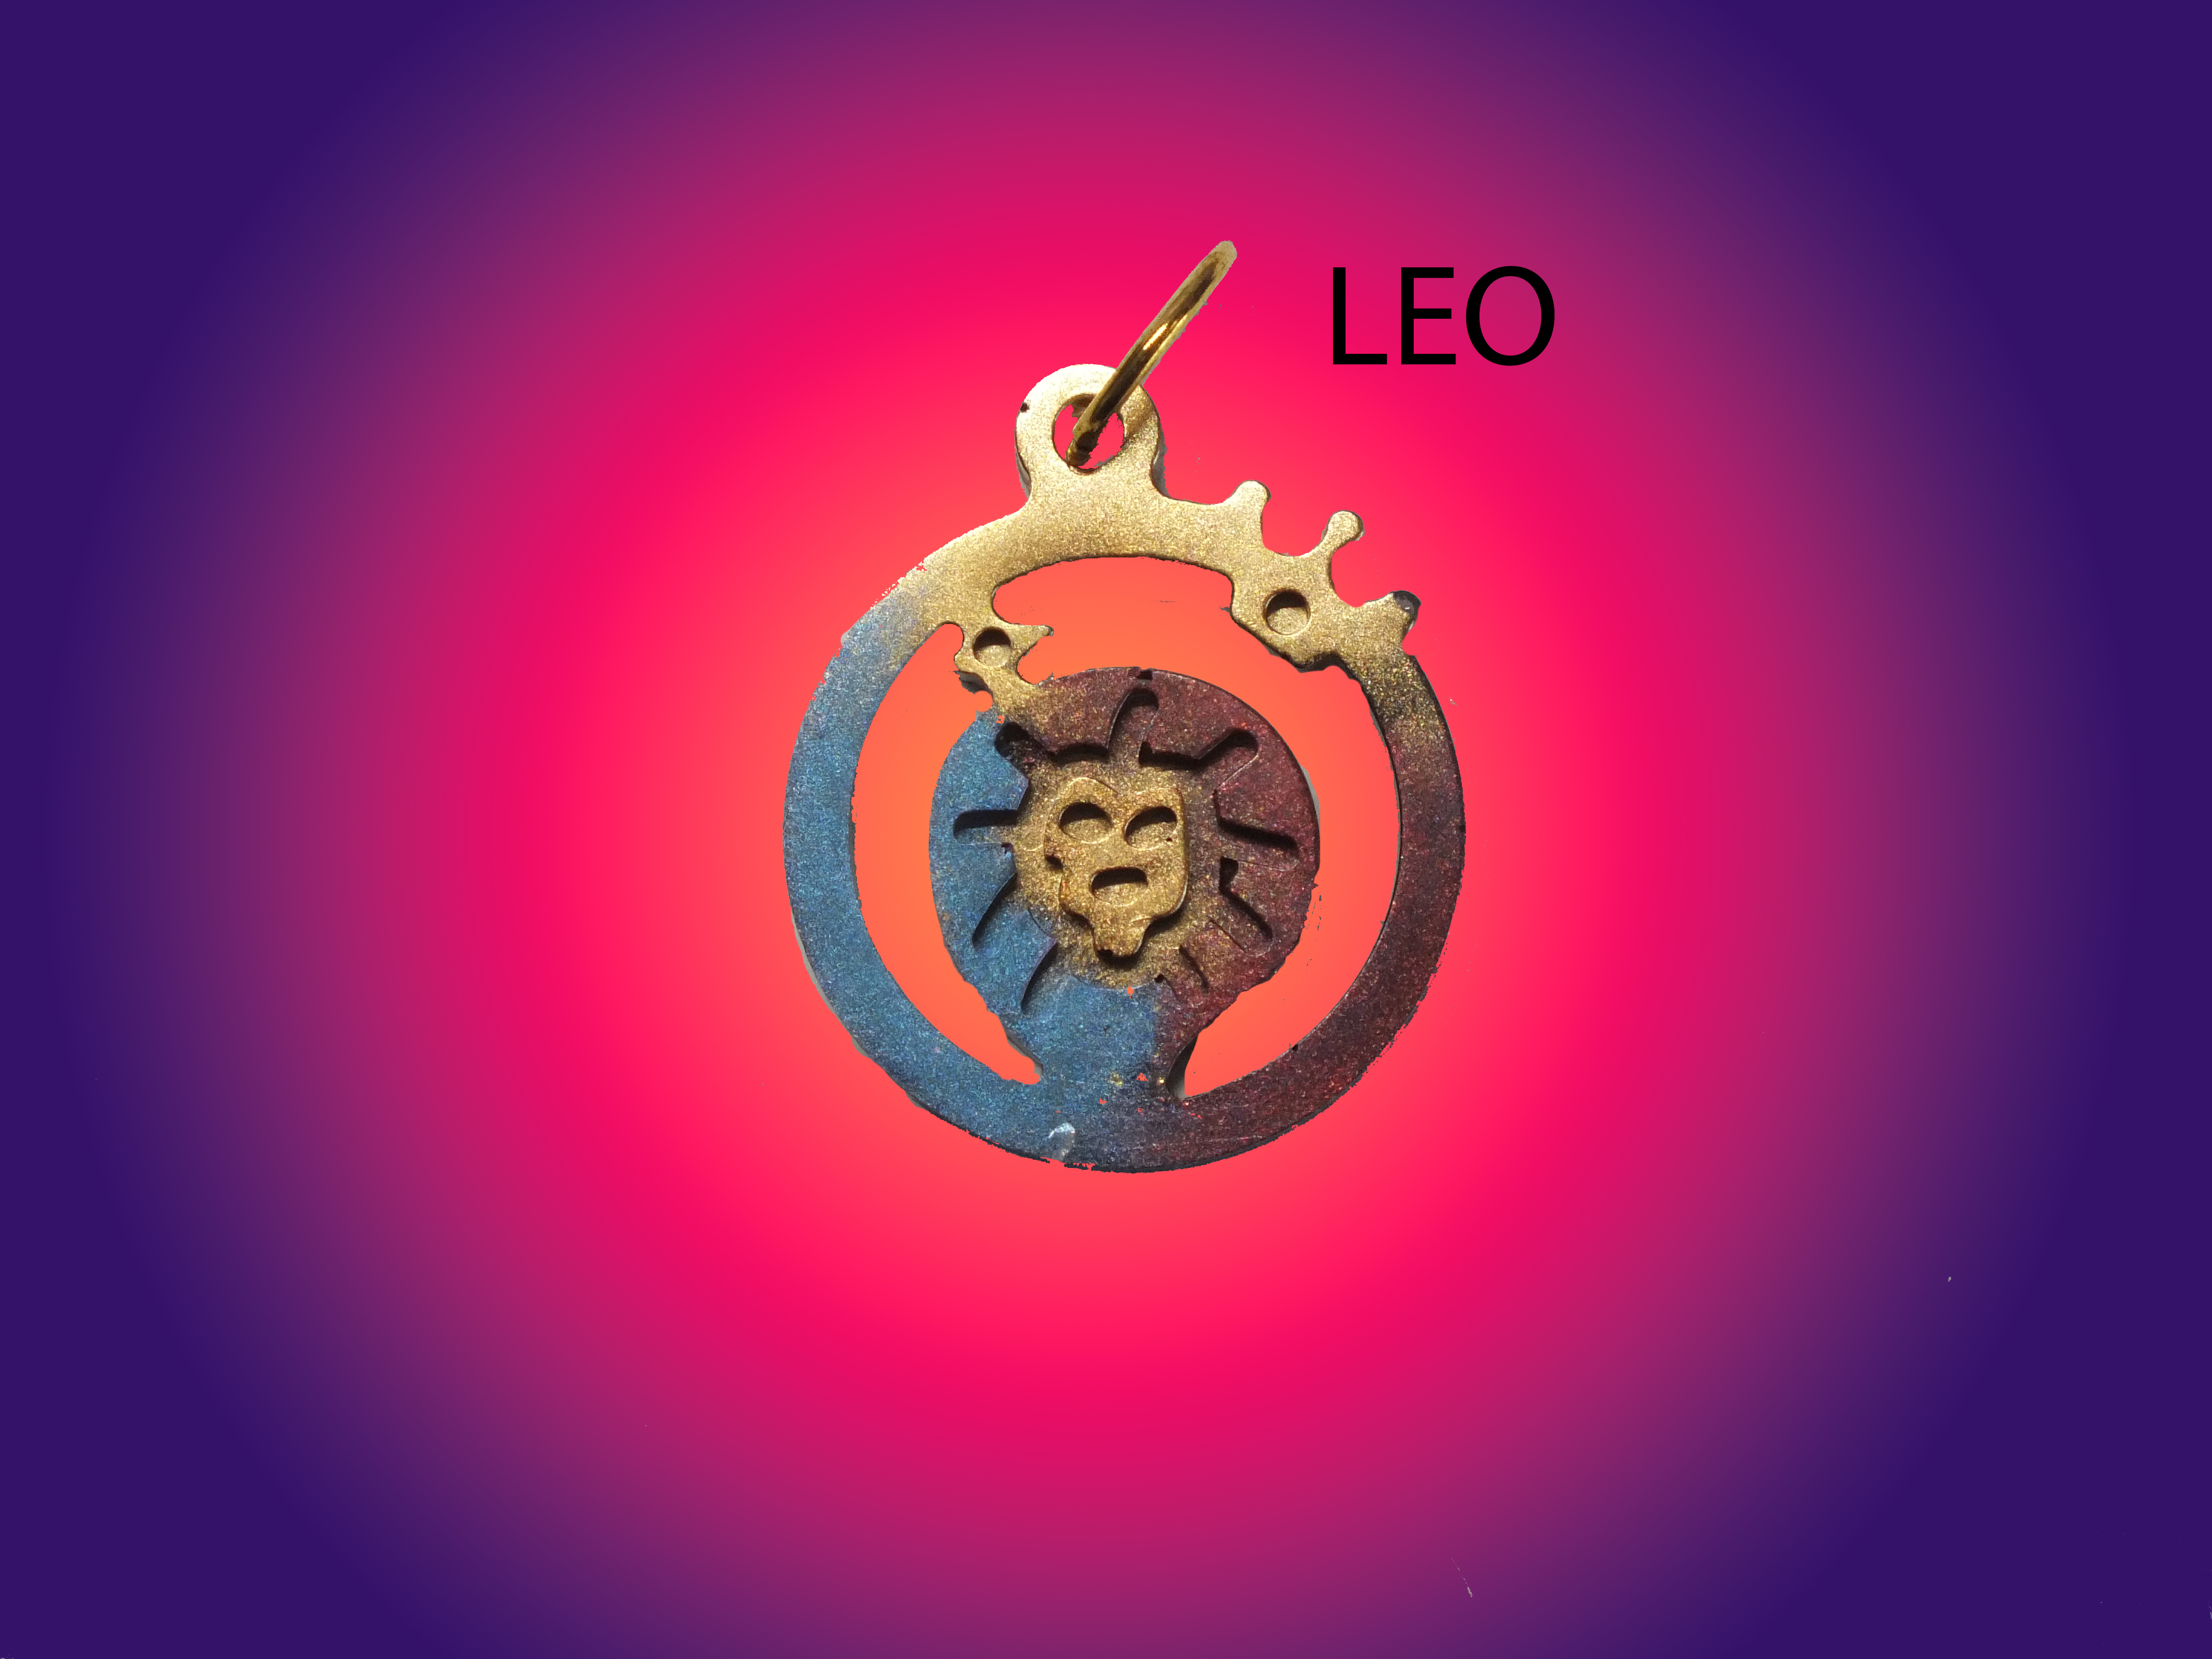 Zodiac necklace